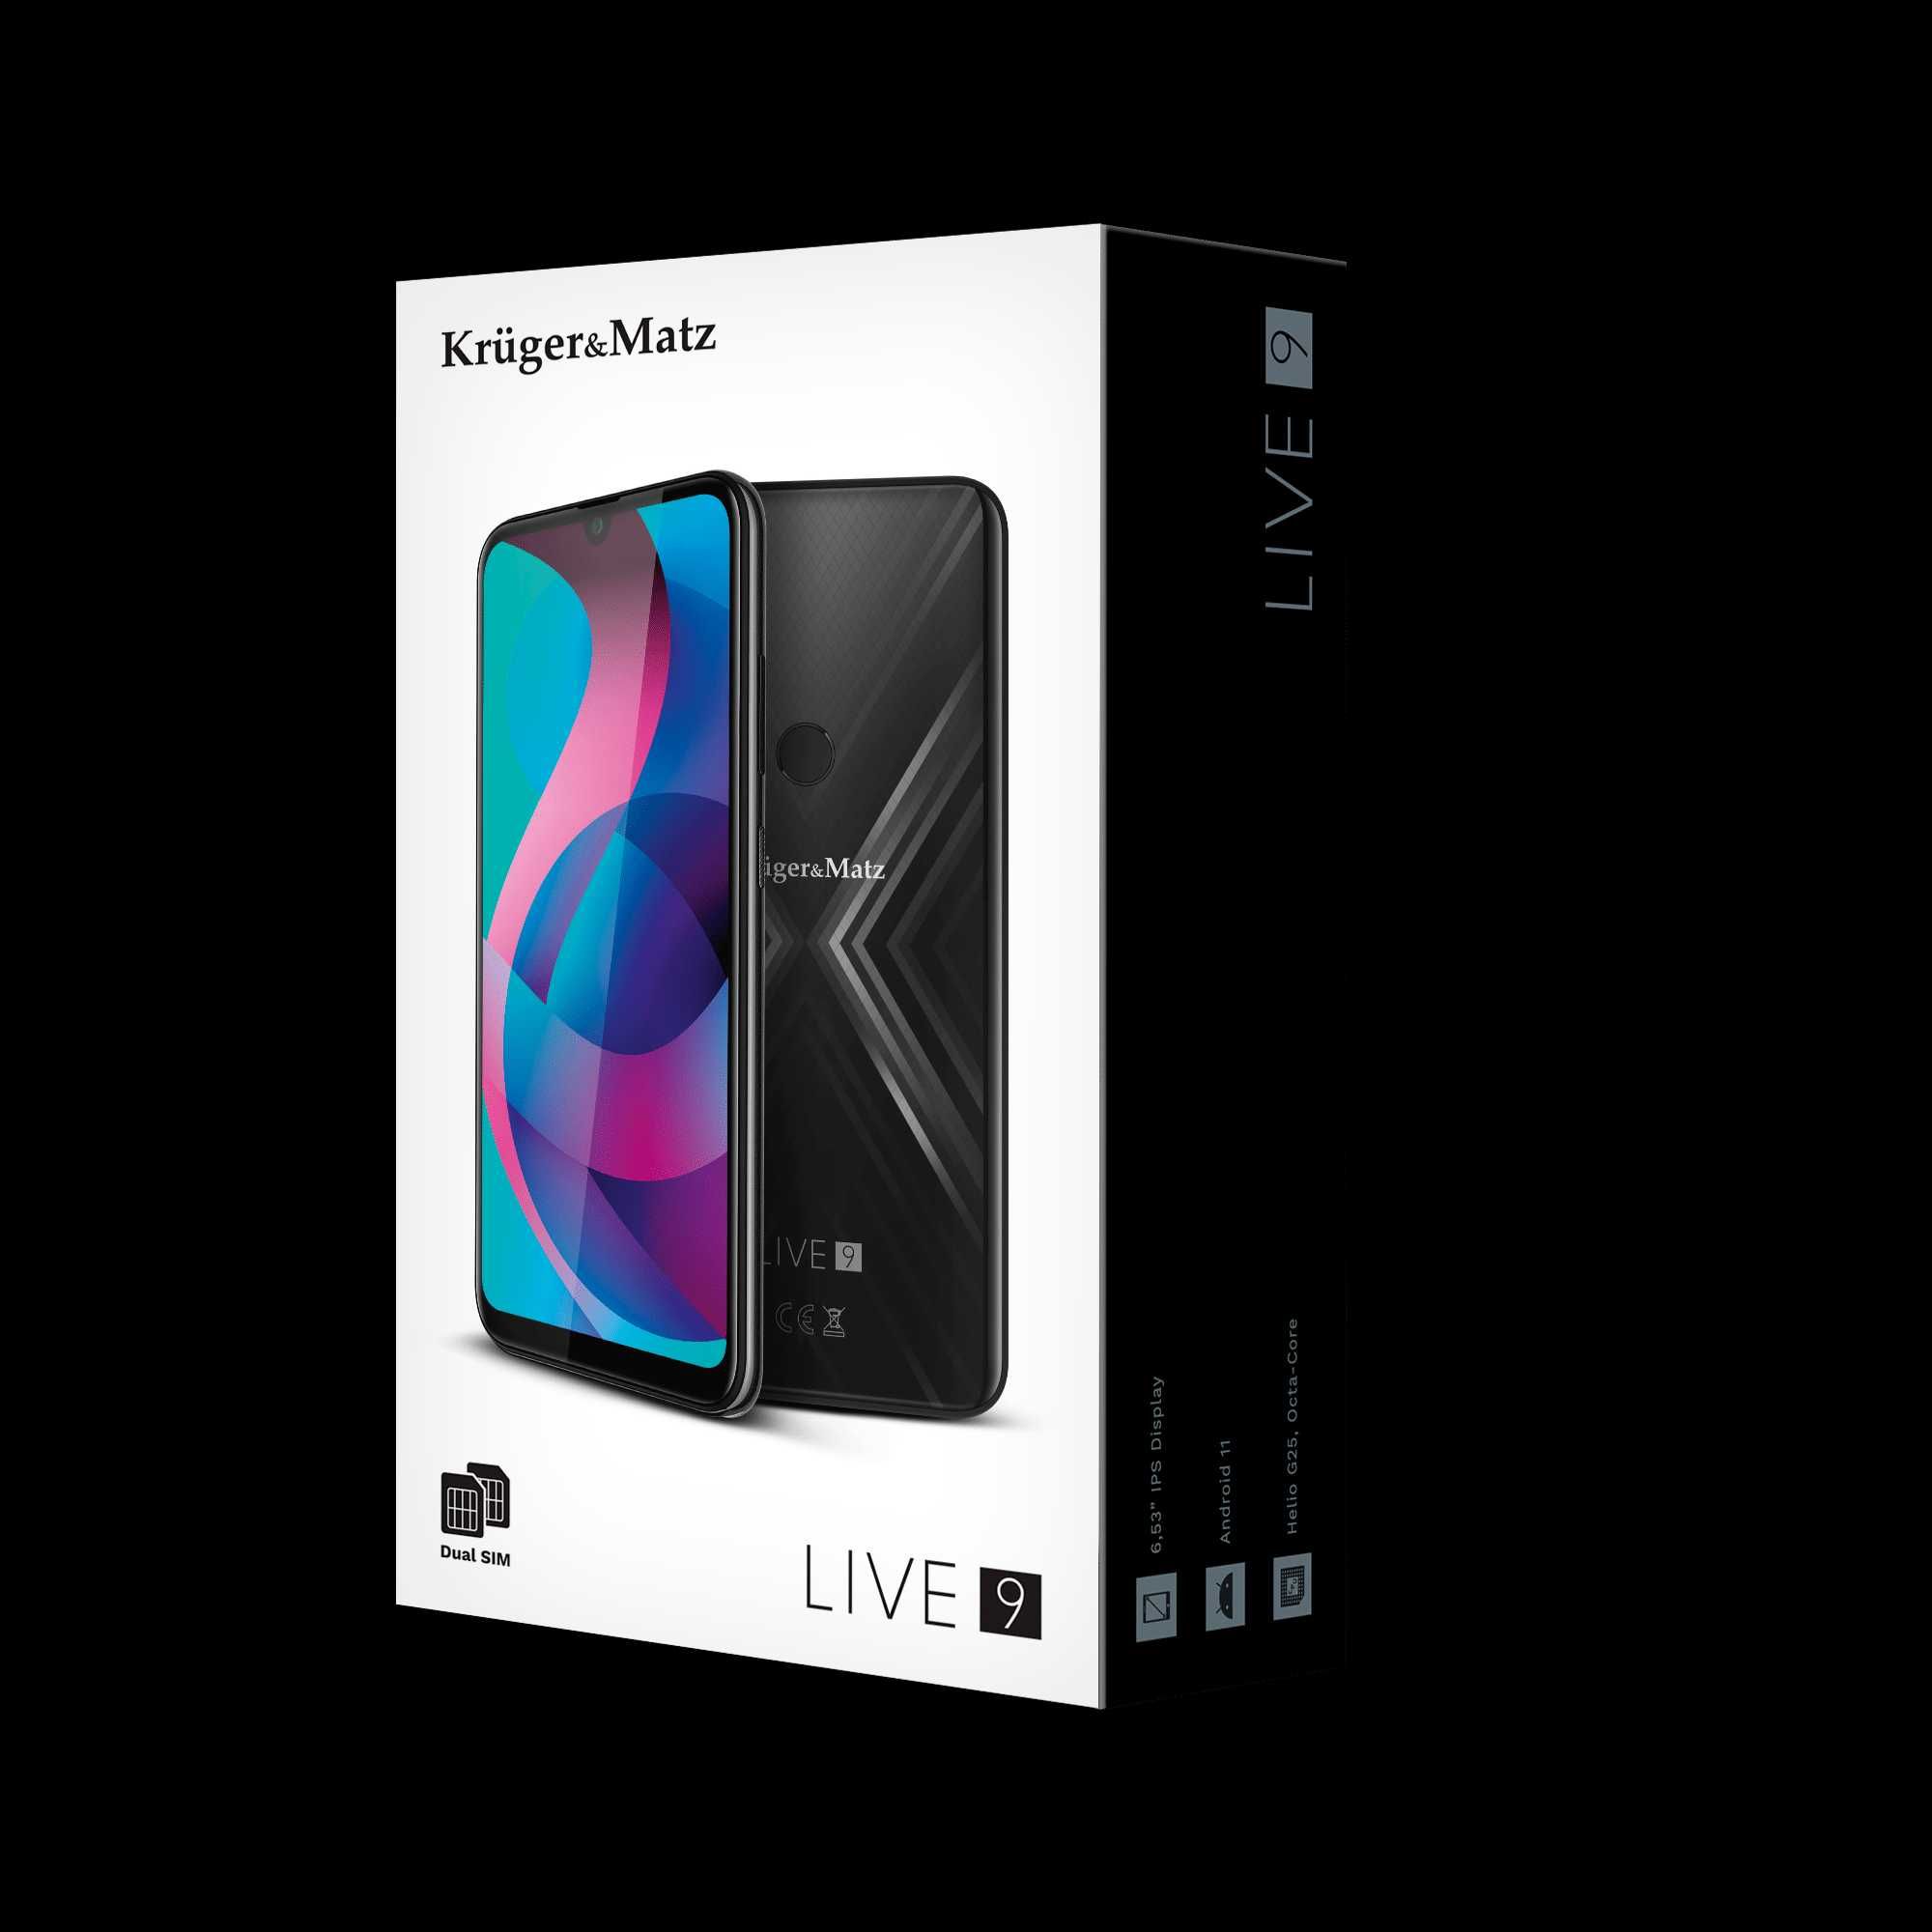 Smartfon Kruger&Matz Live 9 4GB/64GB 4G czarny + słuchawki Bluetooth